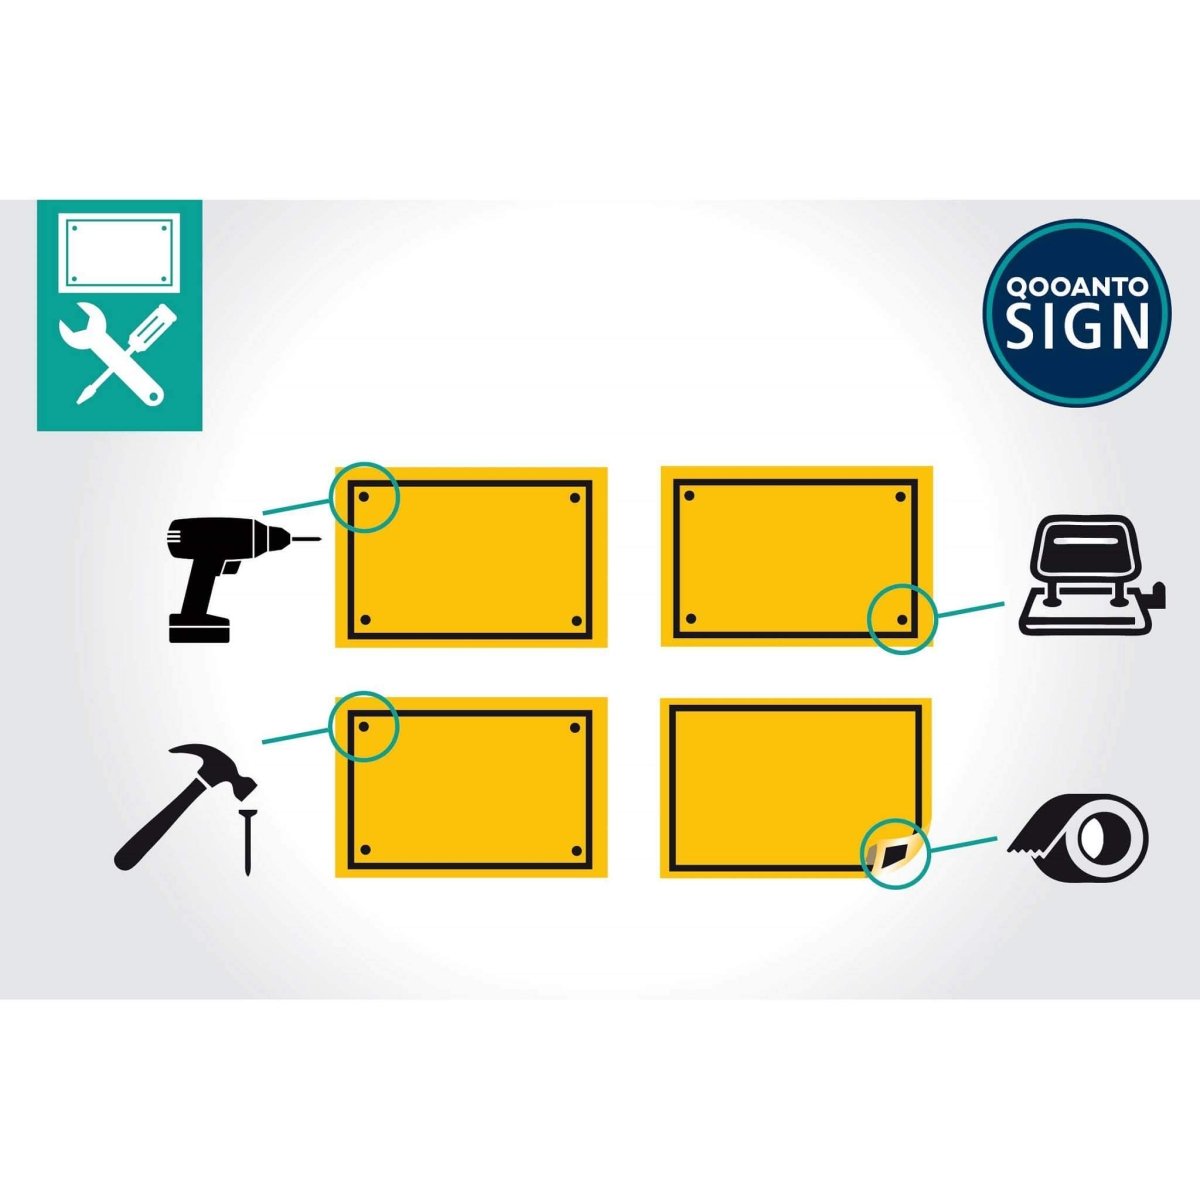 Velo Fahren Verboten Schild aus Alu-Verbund mit UV-Schutz - QOOANTO-SIGN